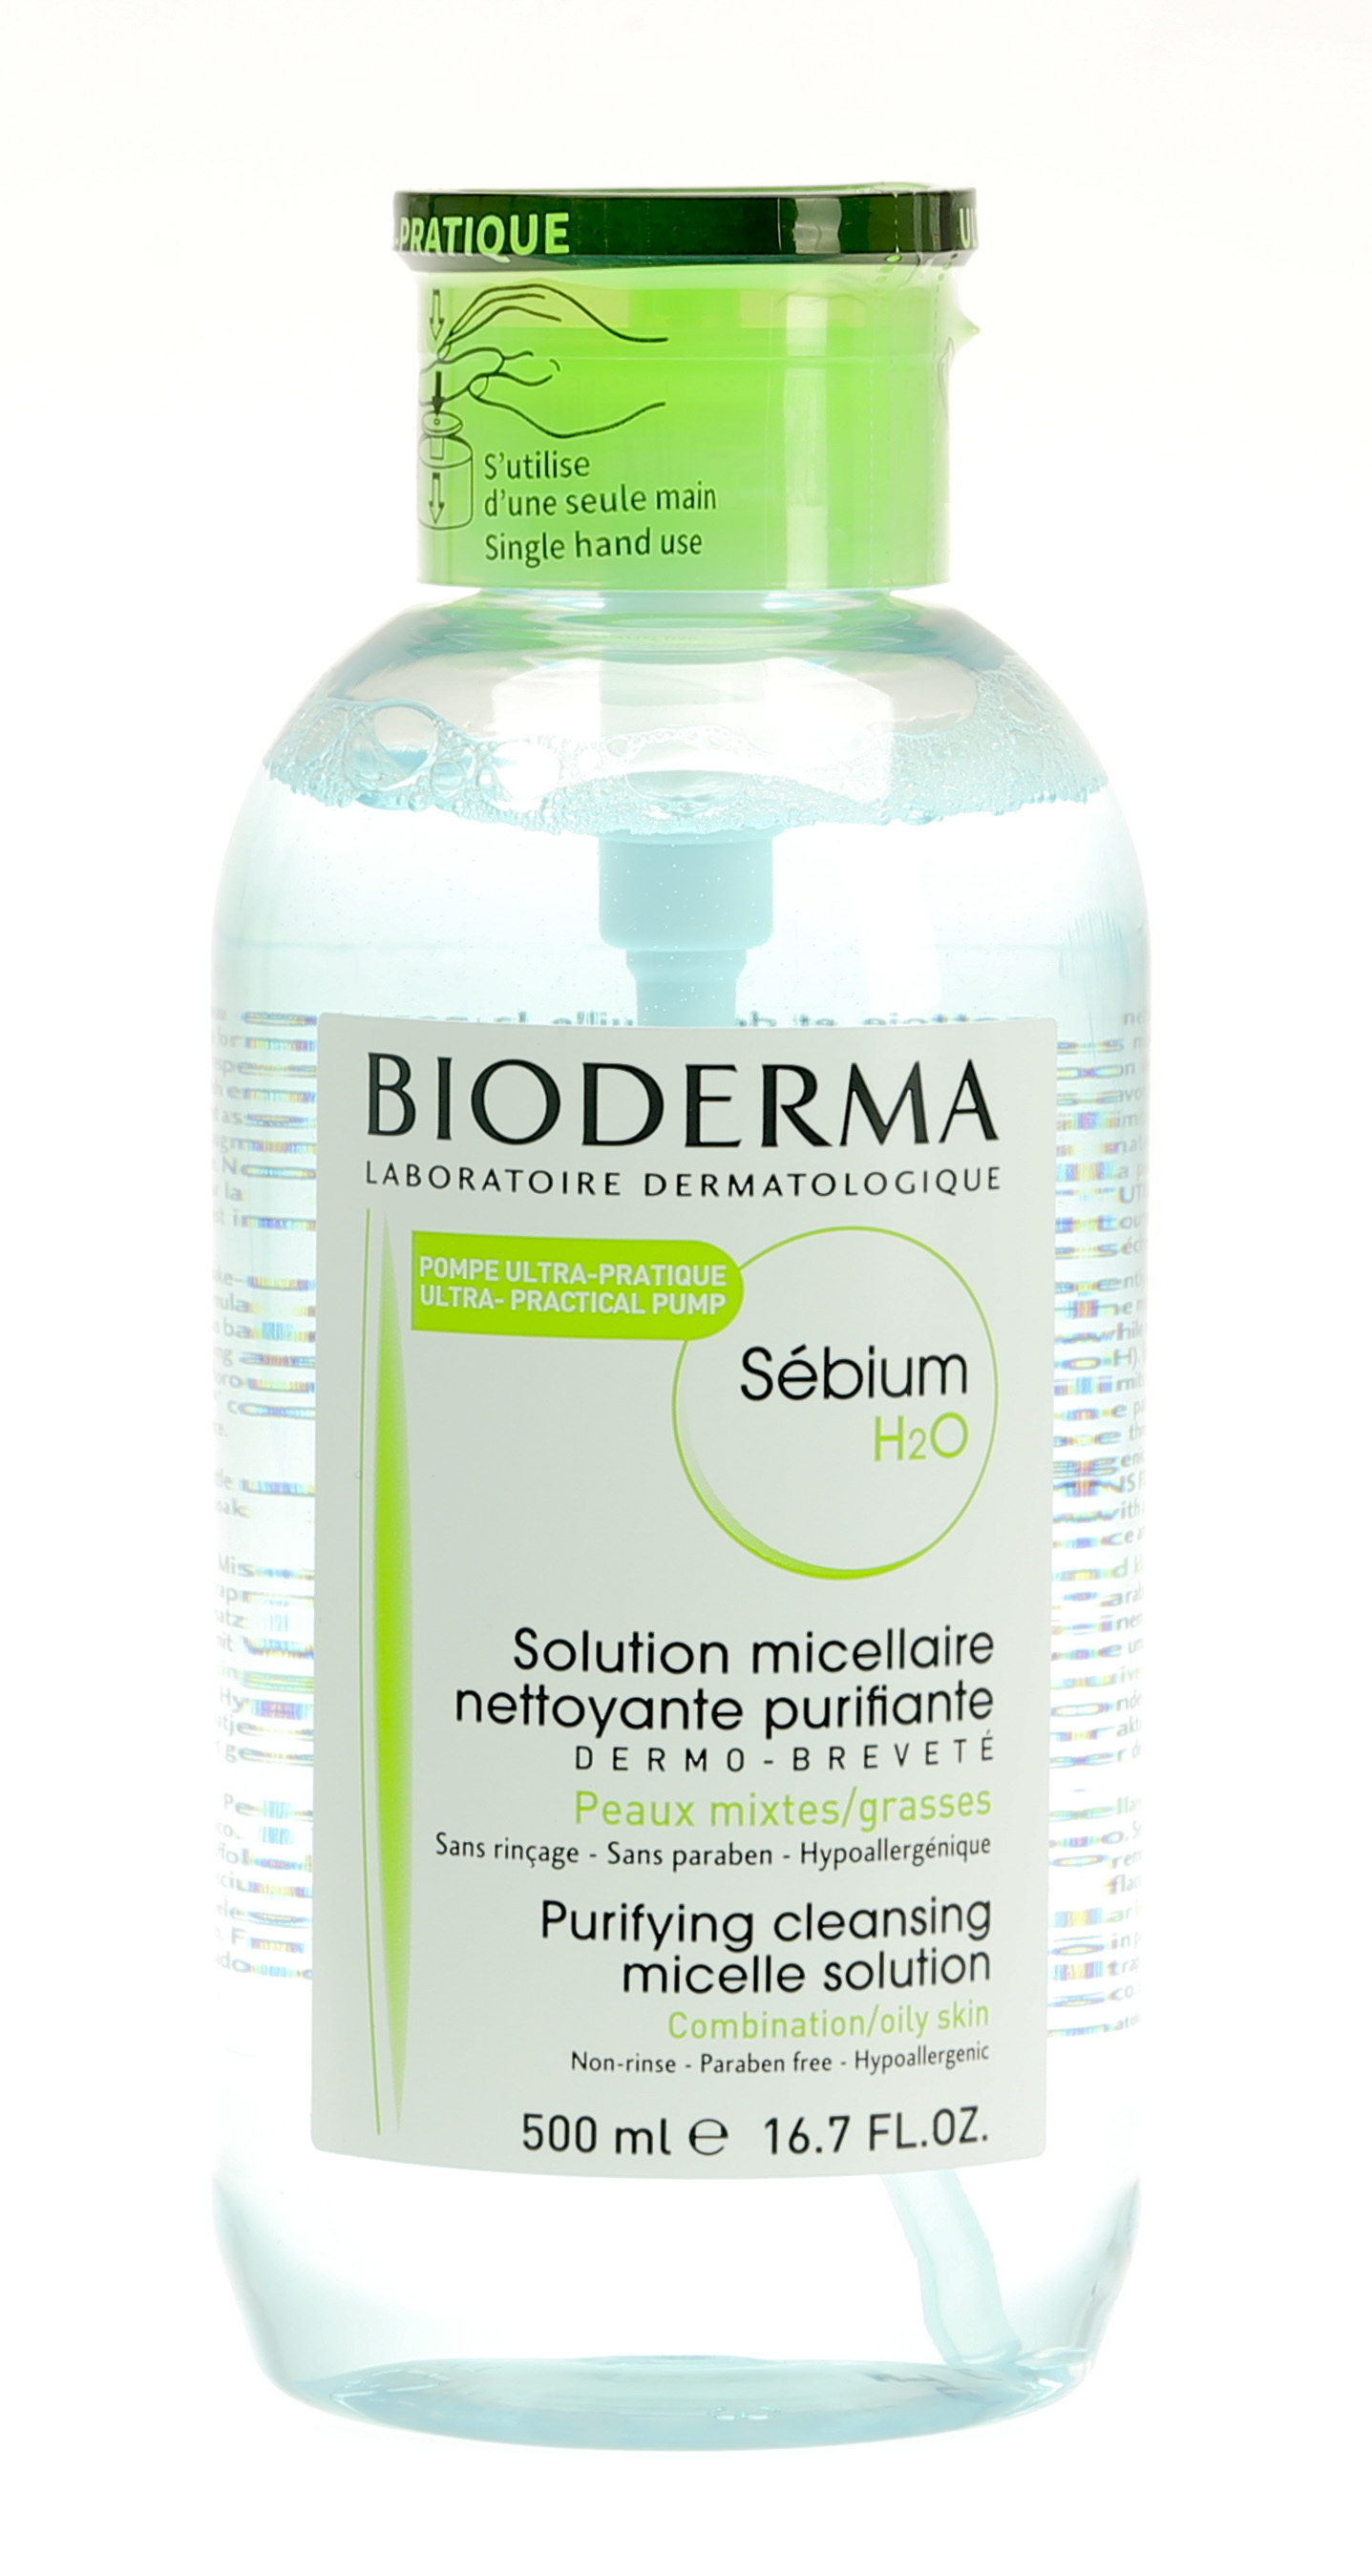 L'eau micellaire purifiante Sébium H2O démaquille et nettoie en douceur les  peaux mixtes à grasses. Ce produit est formulé e